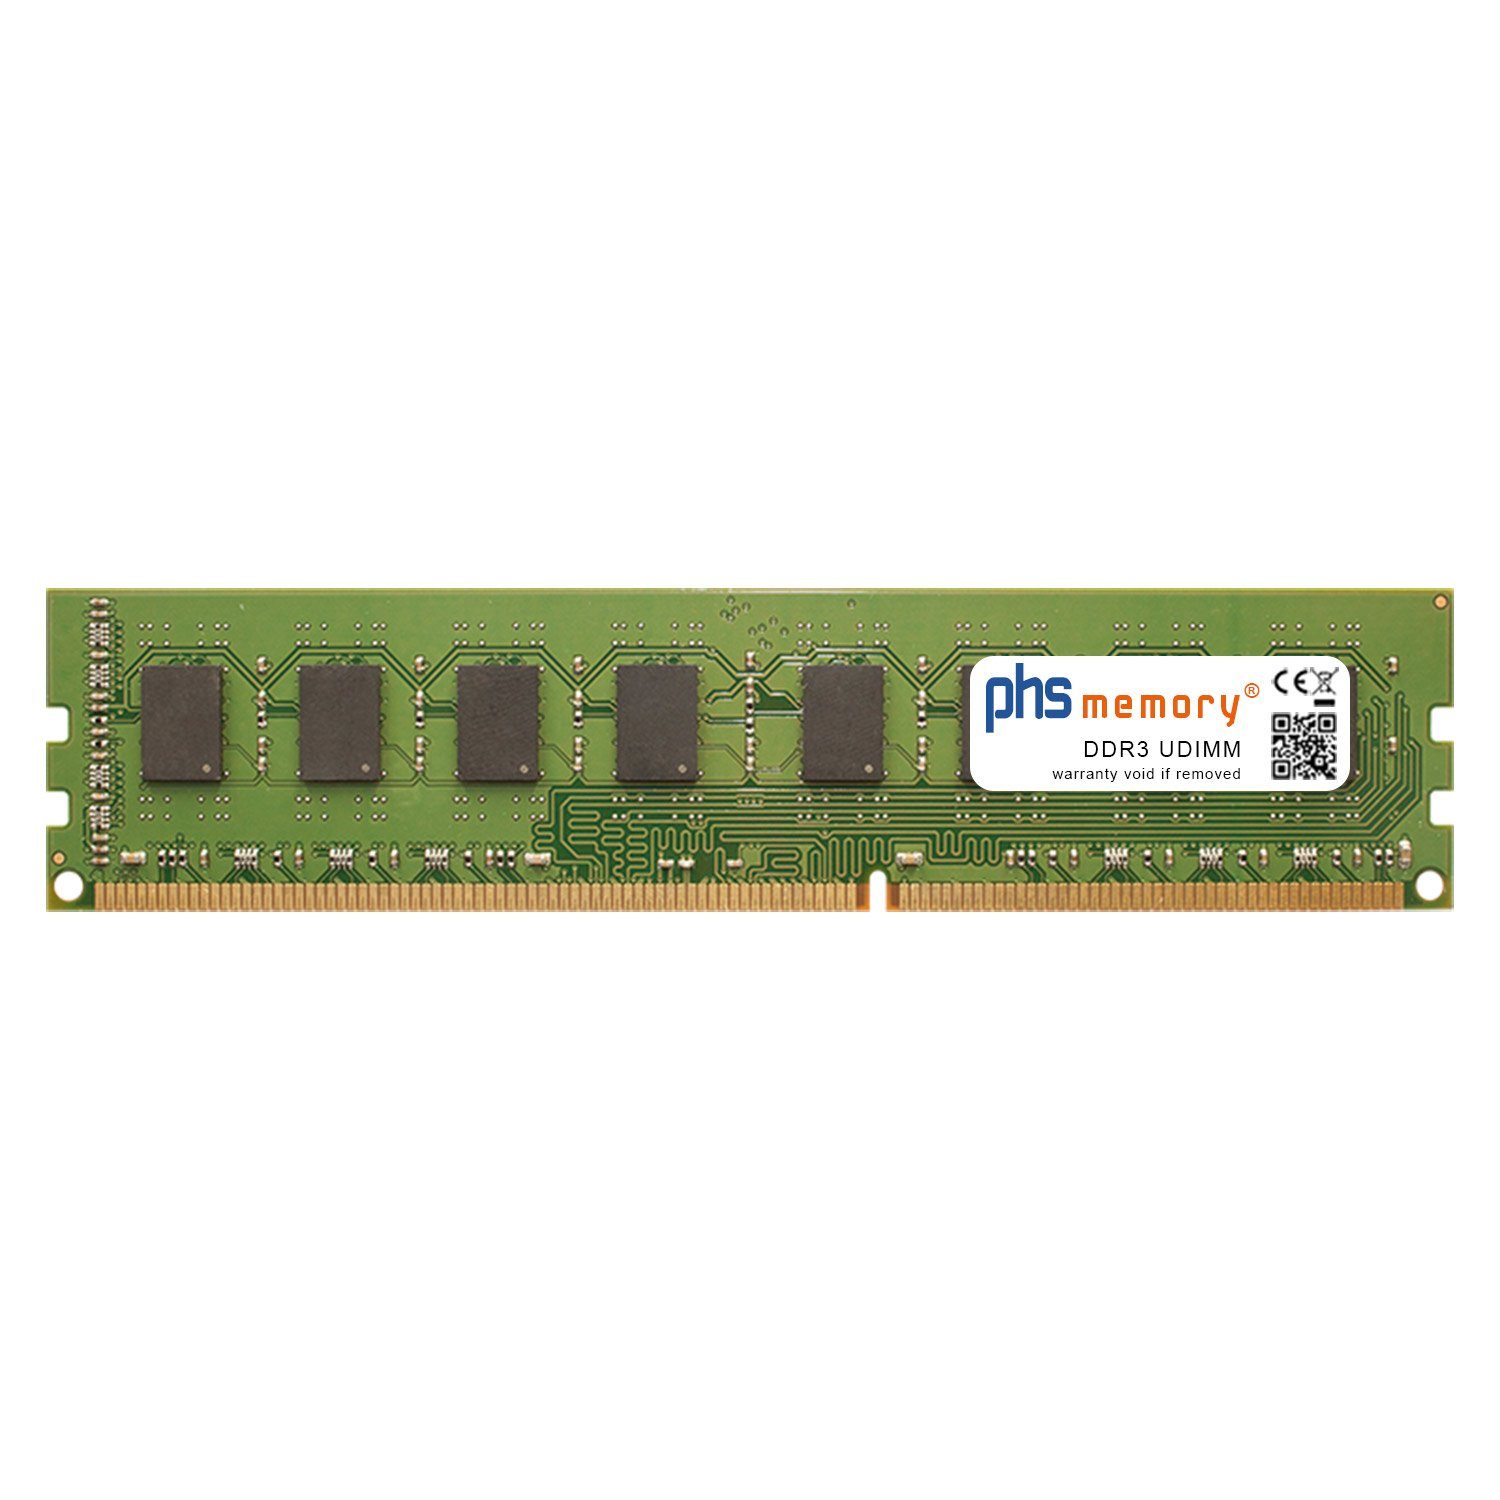 PHS-memory RAM für Hyrican CyberGamer forest 5354 Arbeitsspeicher